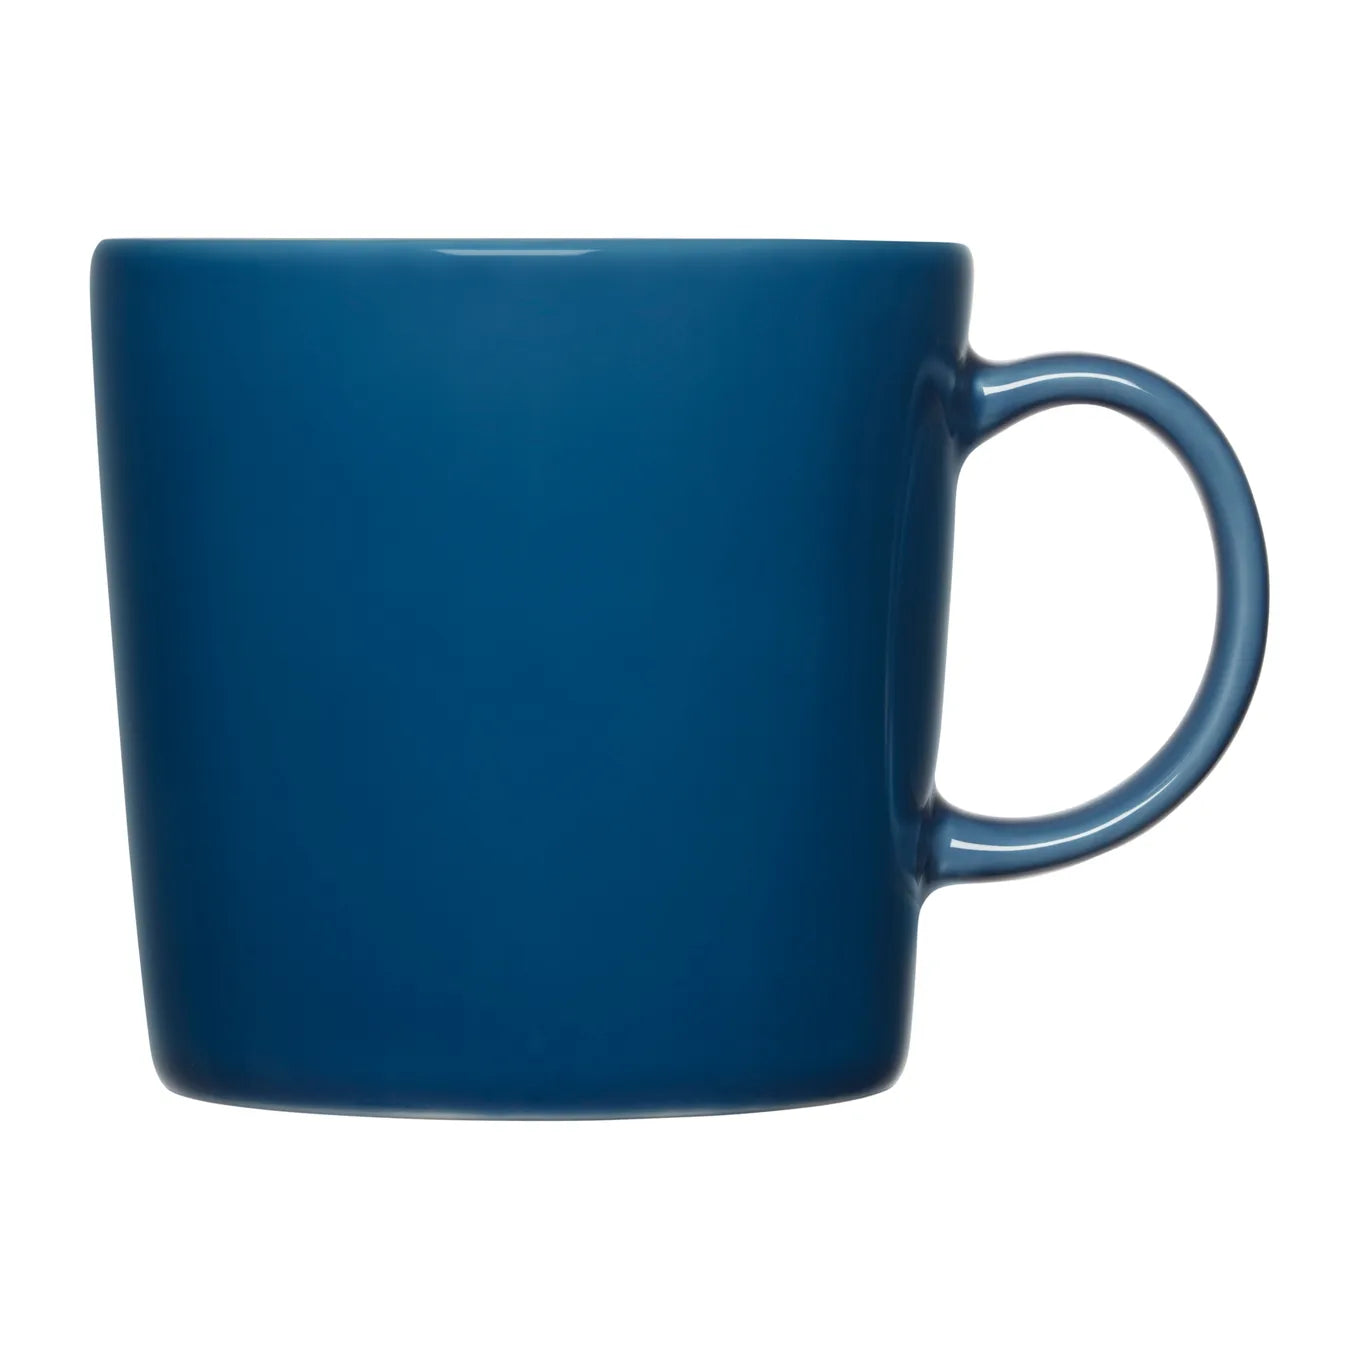 Teema mug 0.3 l small mug 10oz